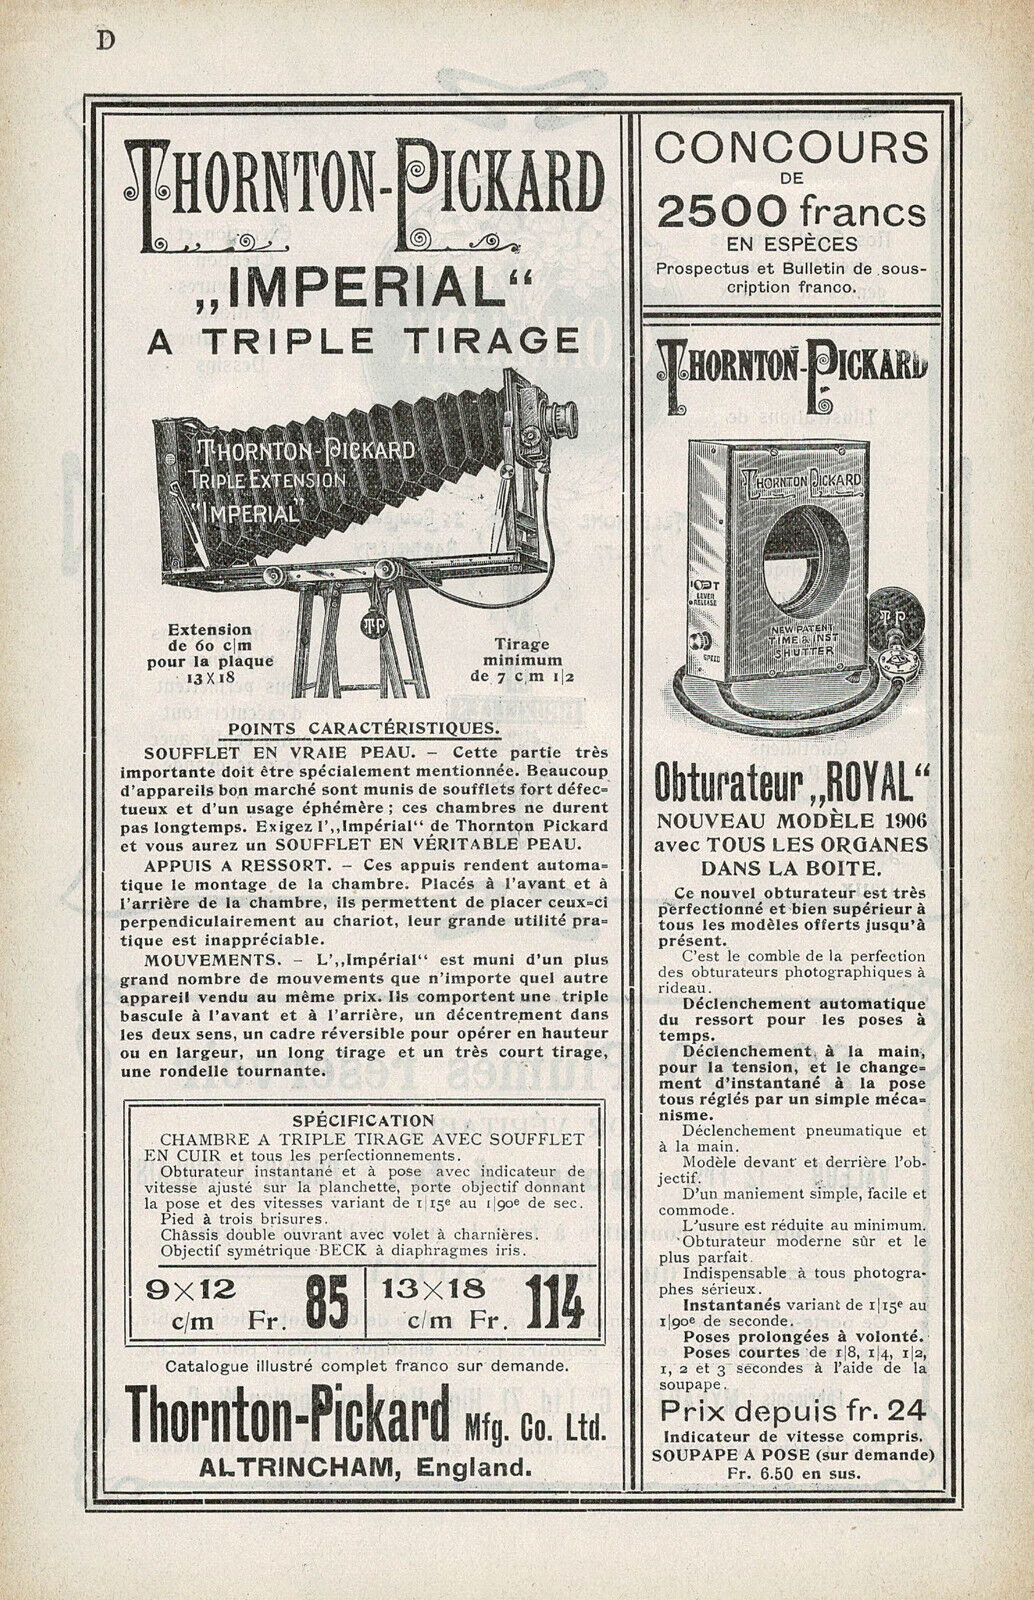 Antique Thornton Pickard Camera Print Ad Rare Original e